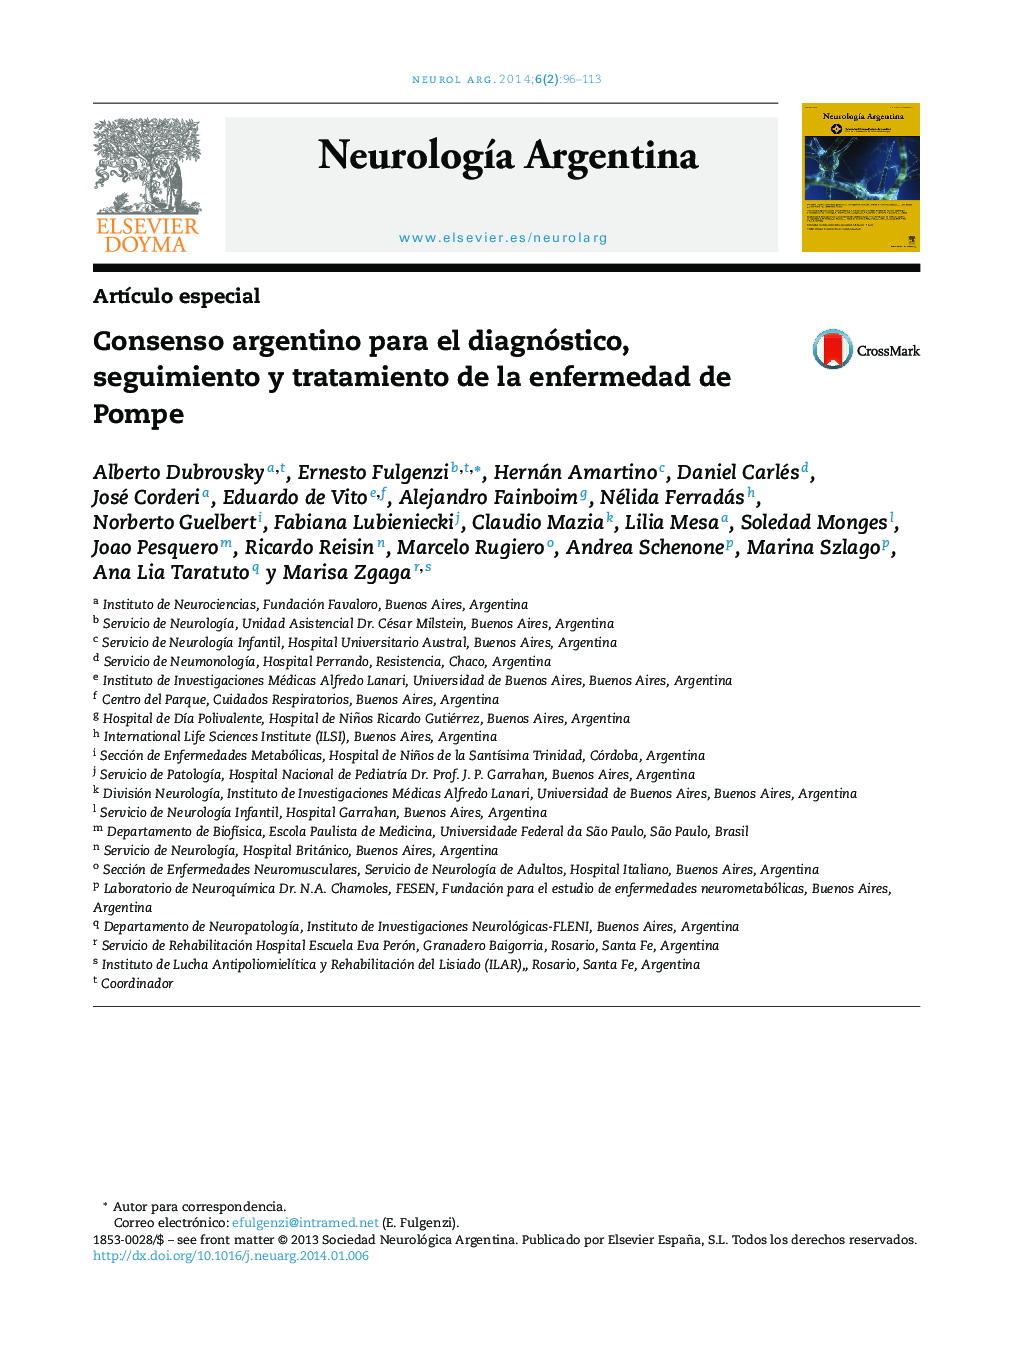 Consenso argentino para el diagnóstico, seguimiento y tratamiento de la enfermedad de Pompe